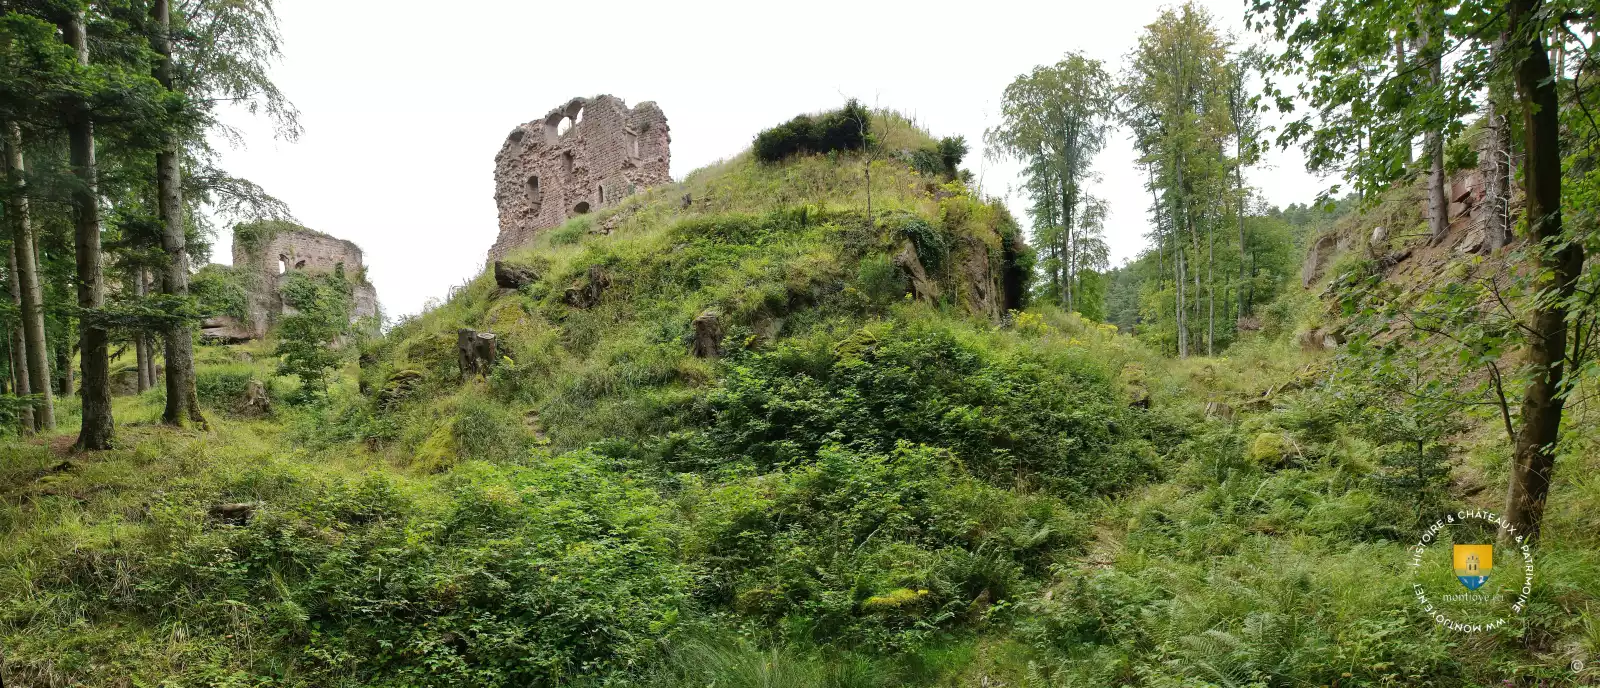 Les châteaux de Dreistein non loin du monastère du Mont Sainte-Odile